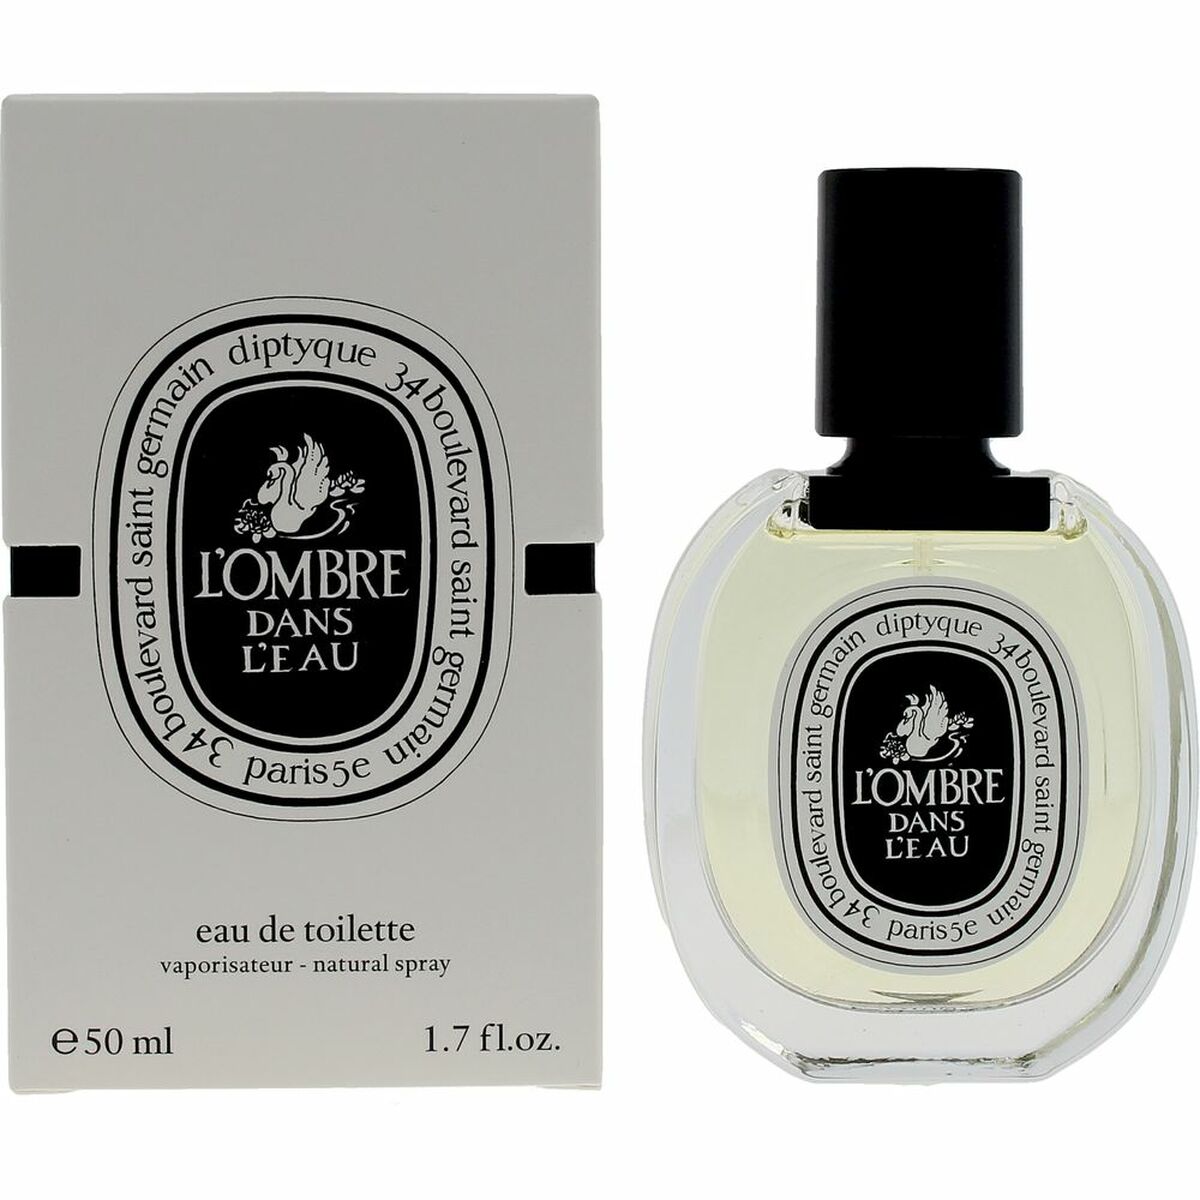 Men's Perfume Diptyque L'OMBRE DANS L'EAU EDT 50 ml l'Ombre Dans l'Eau